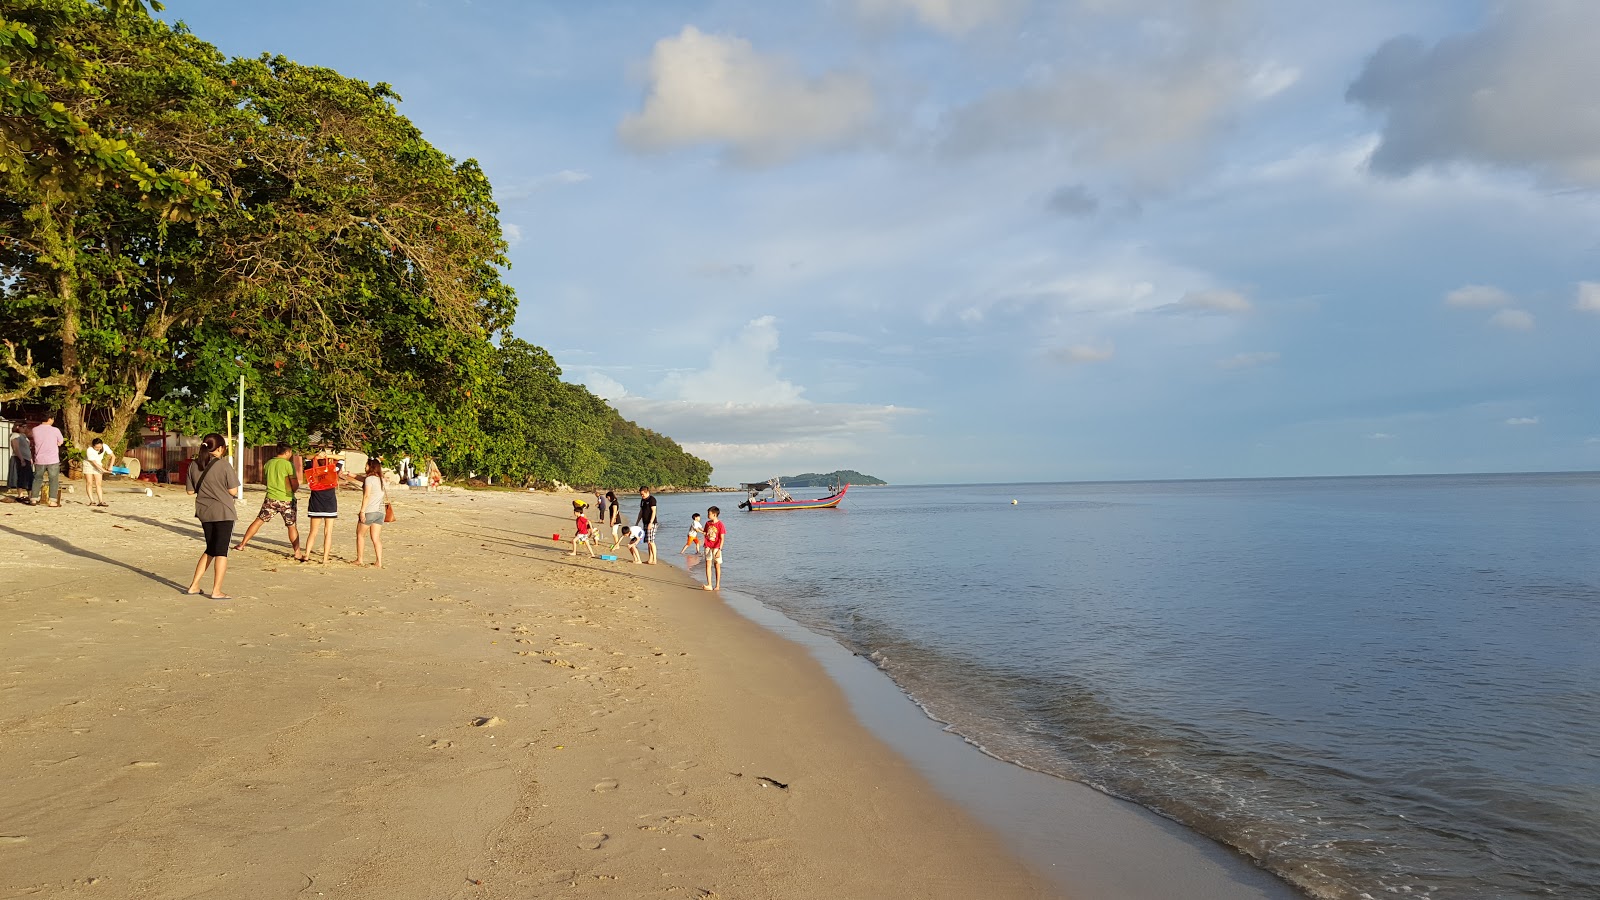 Foto af Ombak Damai Beach - populært sted blandt afslapningskendere